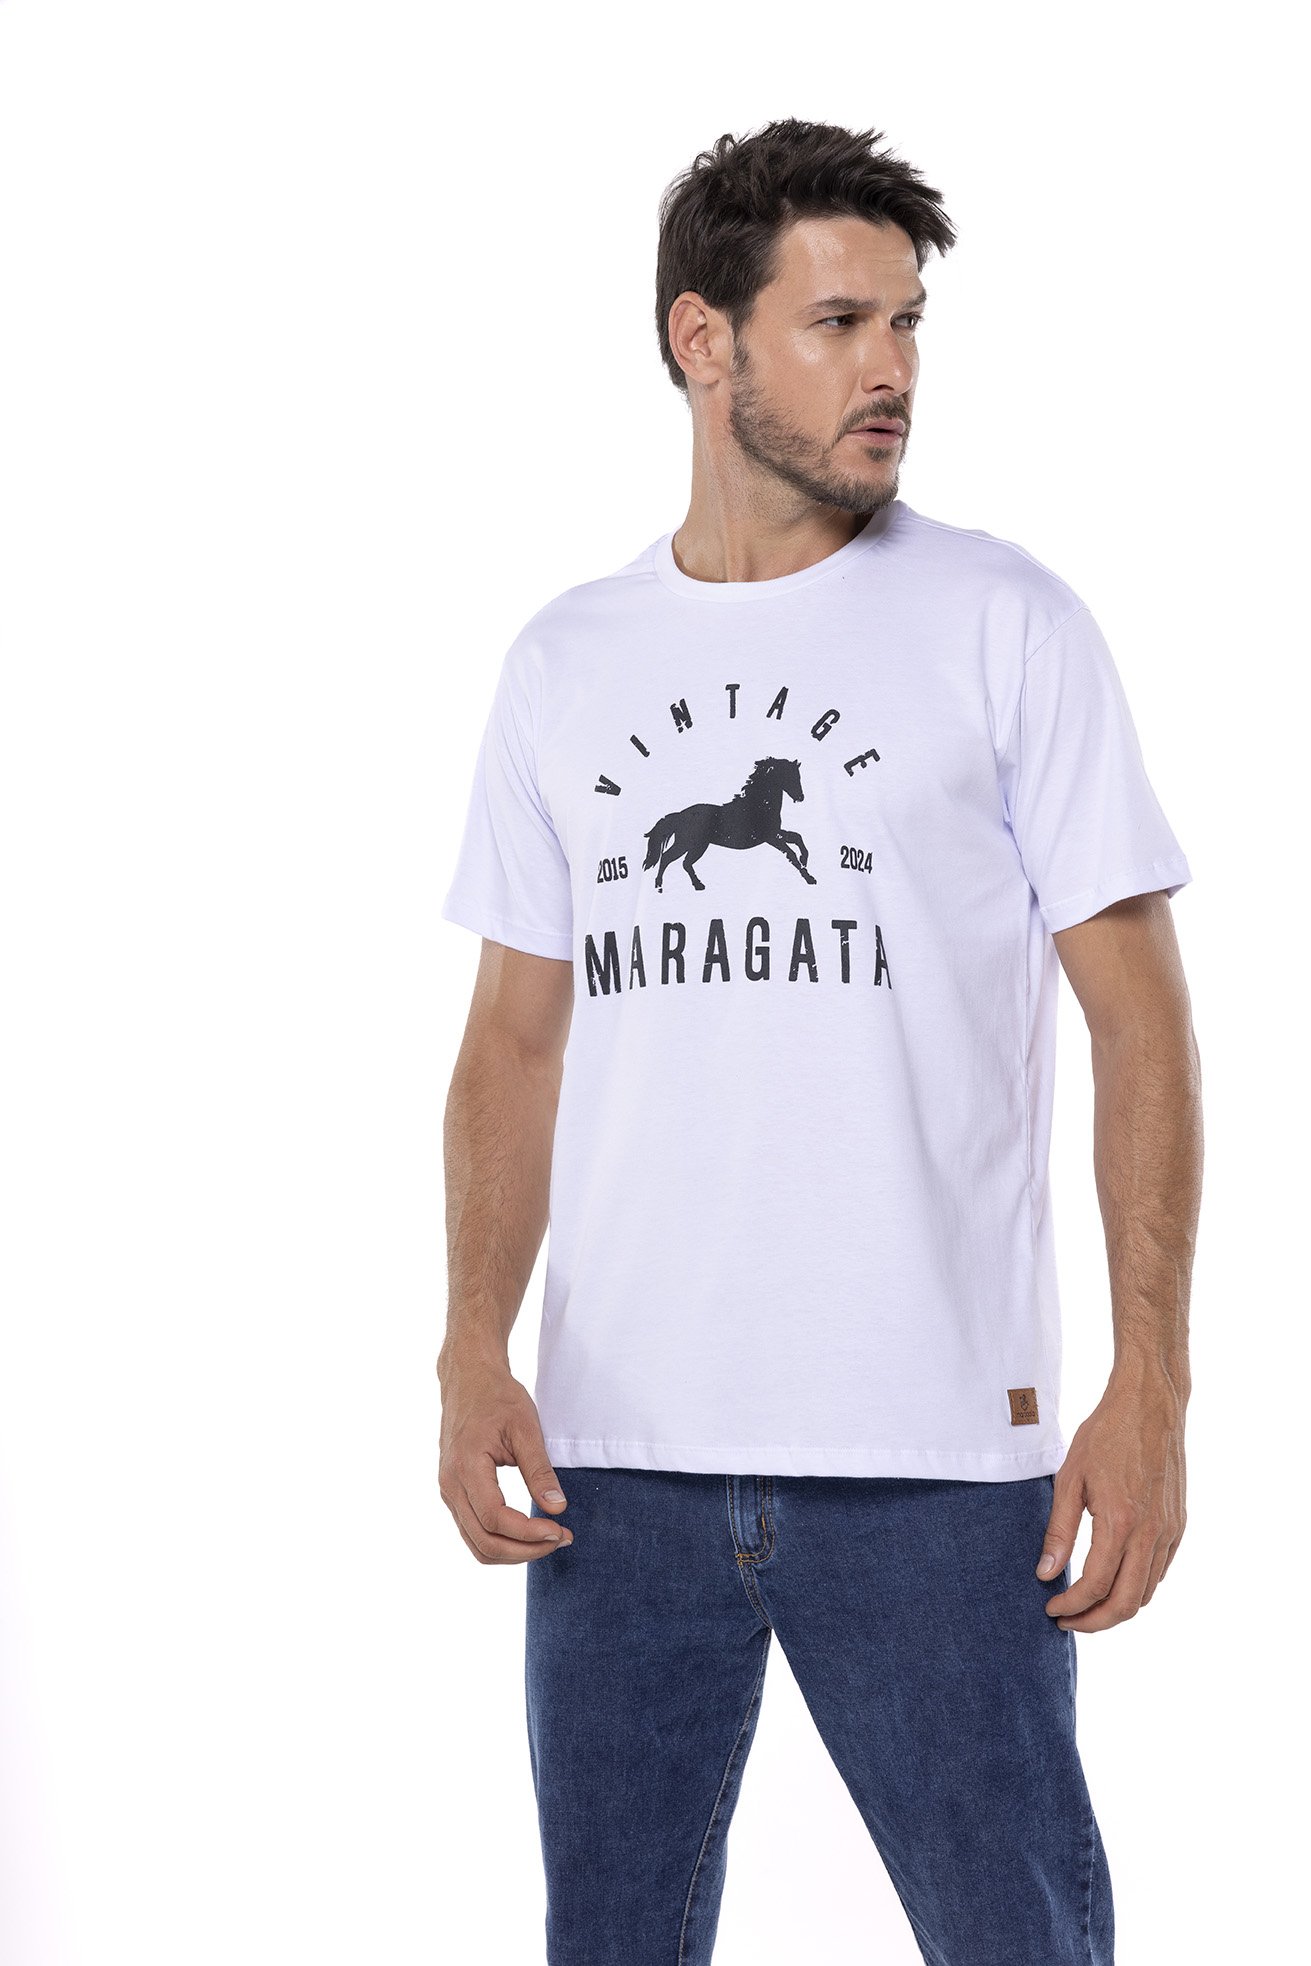 Homem vestindo a camiseta vintage da Maragata, na cor branca